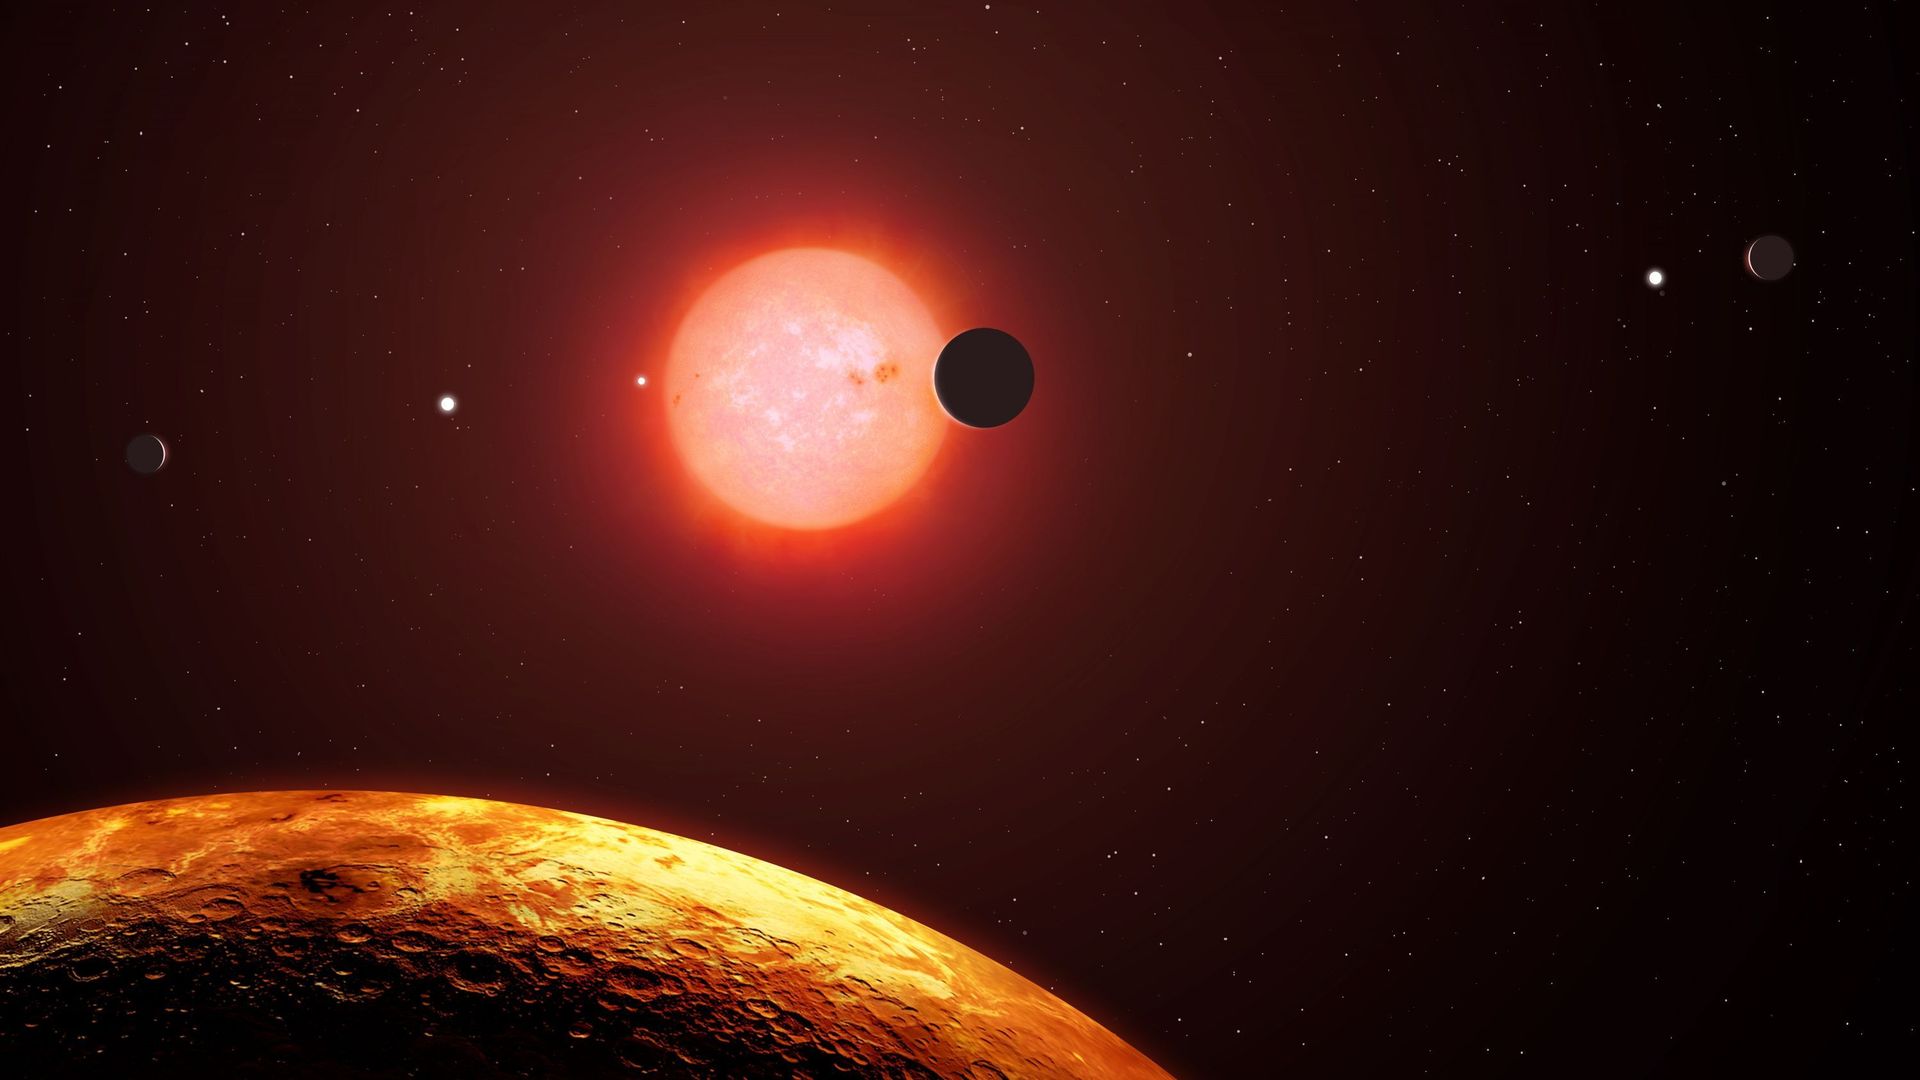 Comment l'exoplanète s'est-elle retrouvée sur cette orbite? 